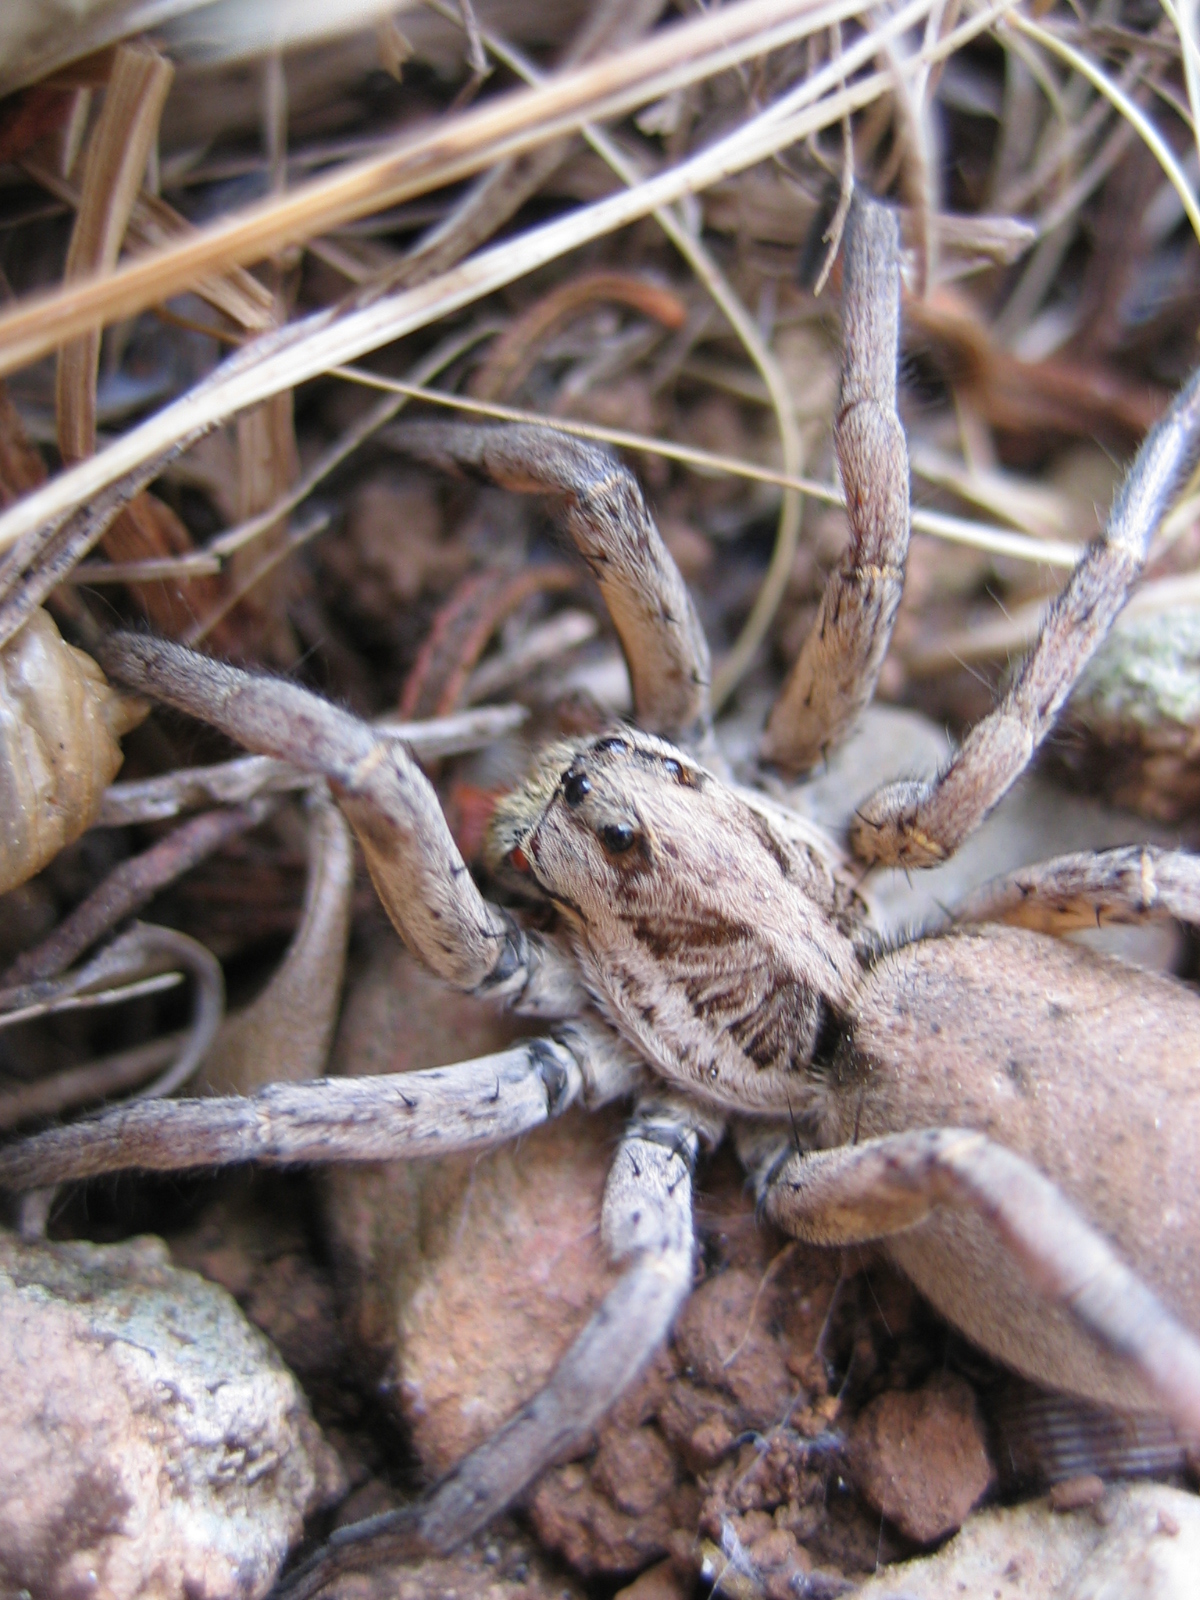 Atilẹyin tarantula (Lycosa tarantula)